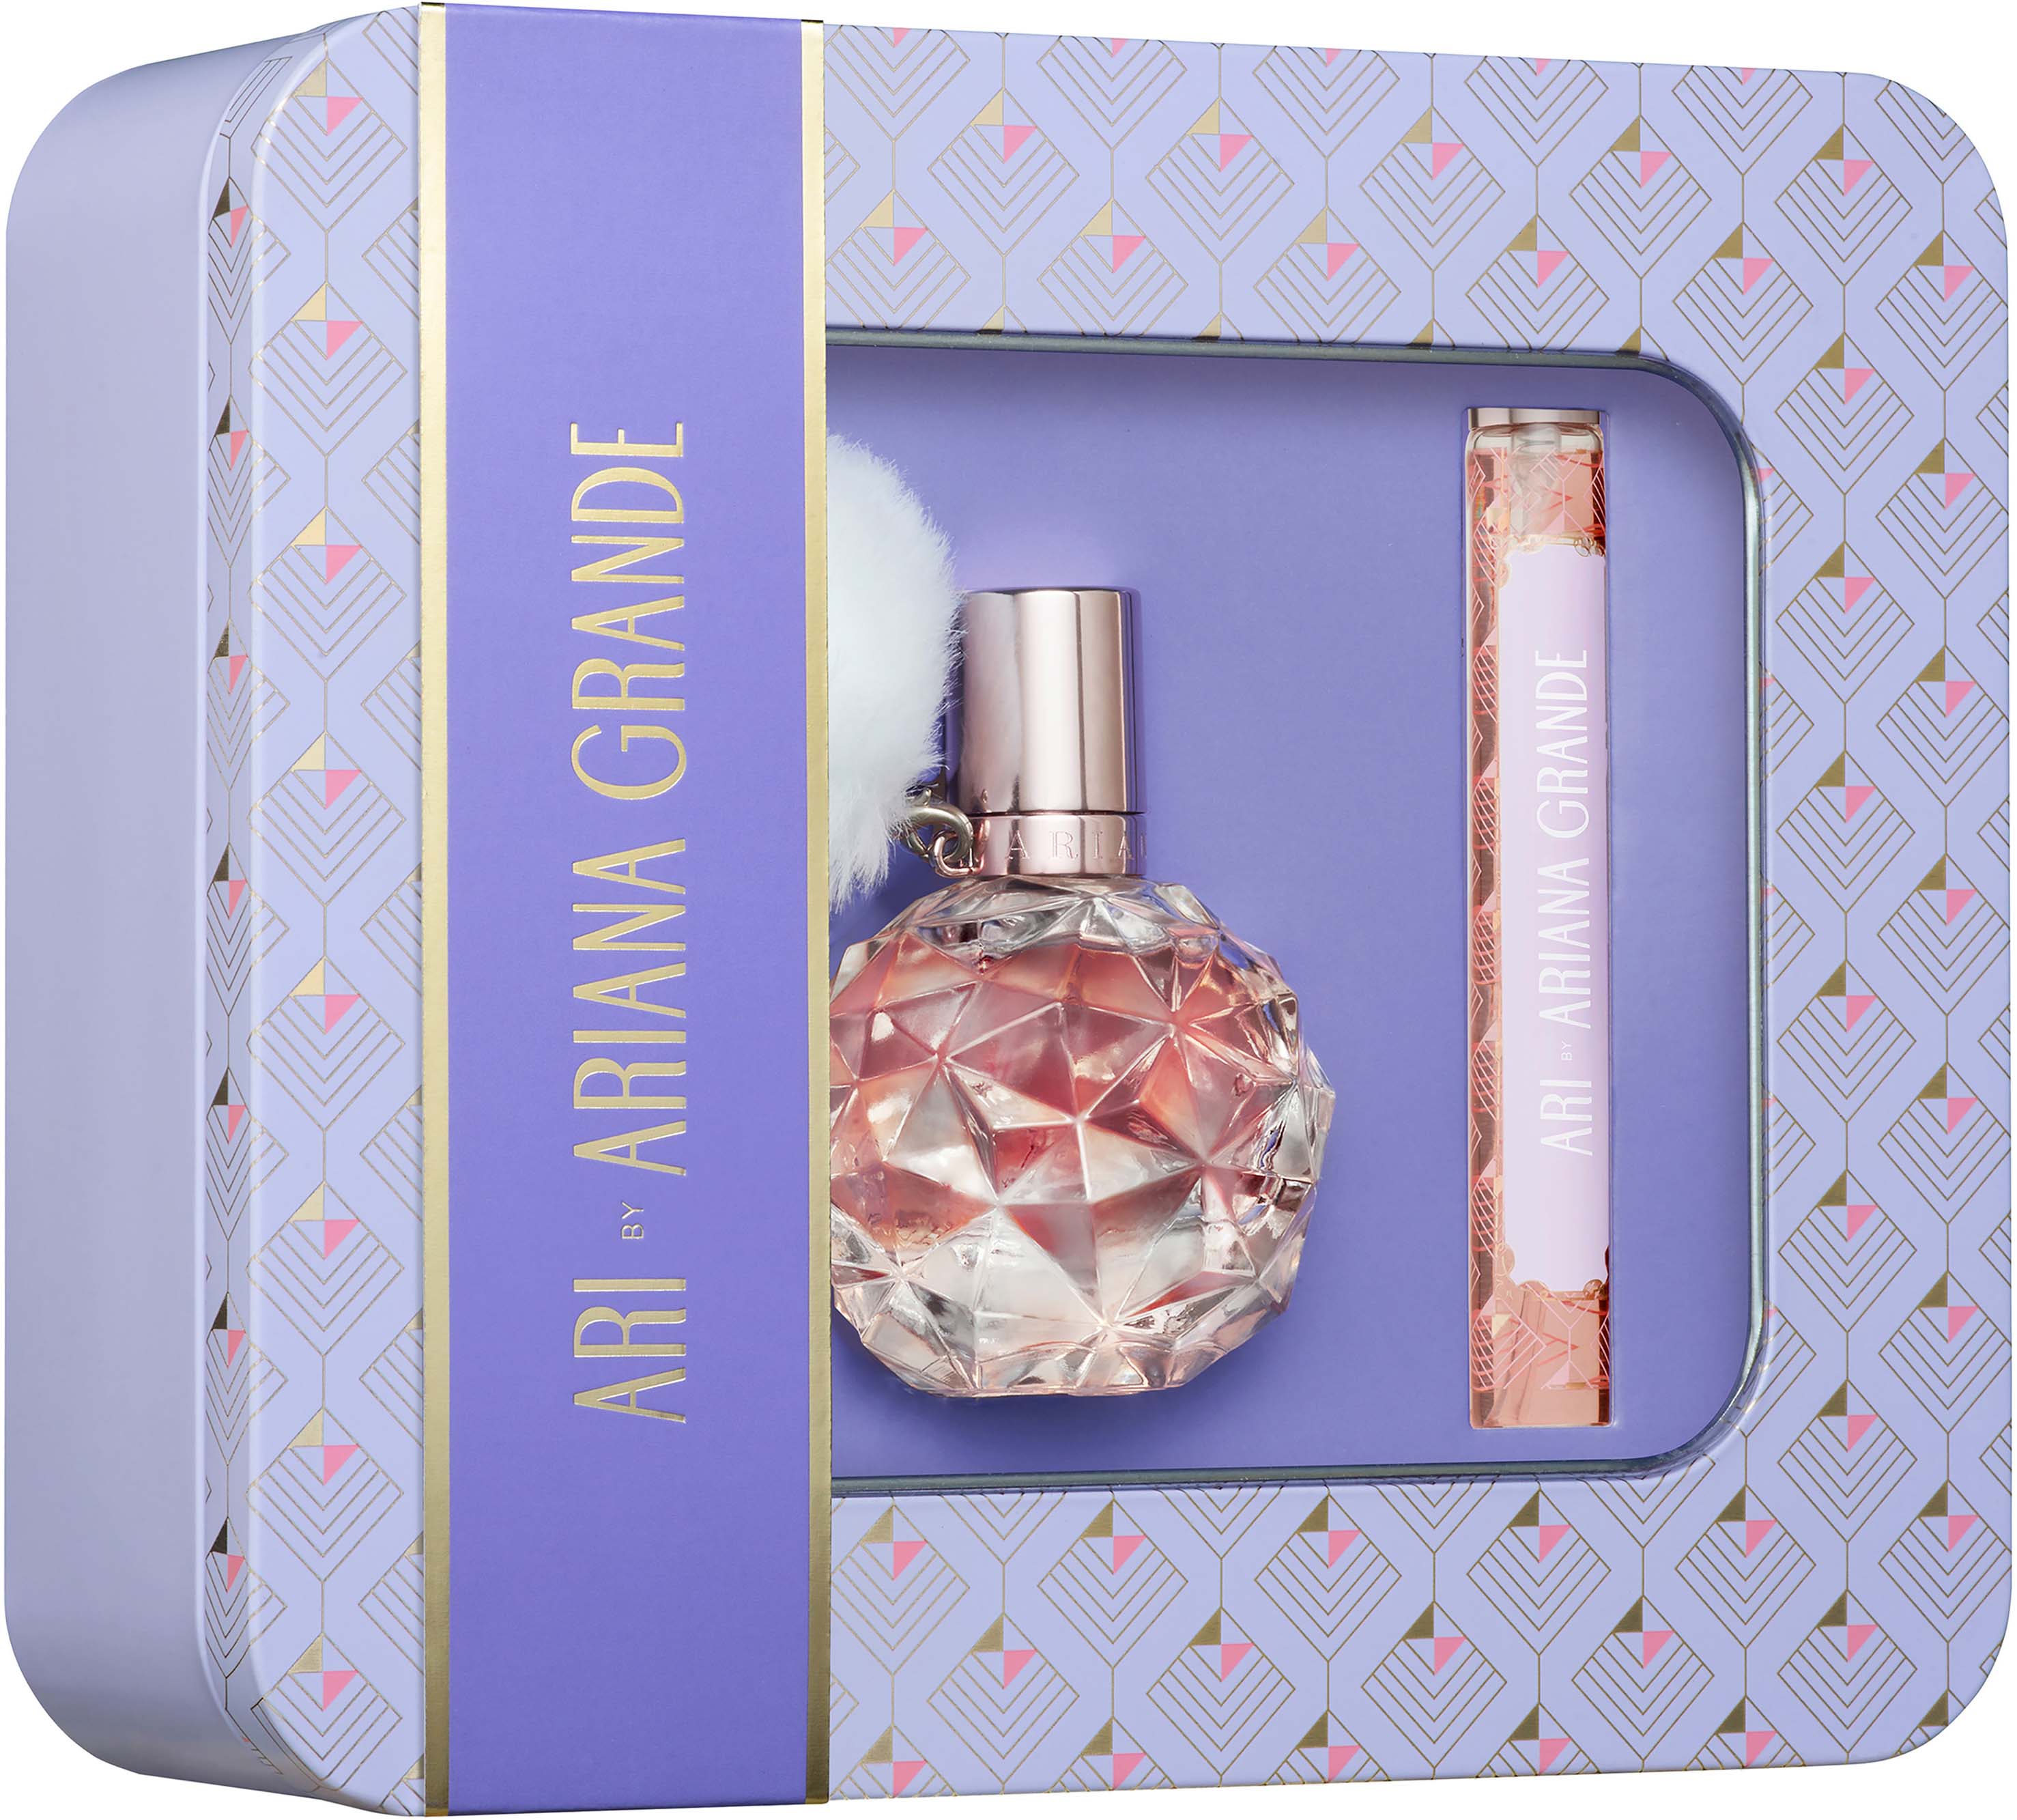 Ari Ariana Grande Perfume Set | sites.unimi.it